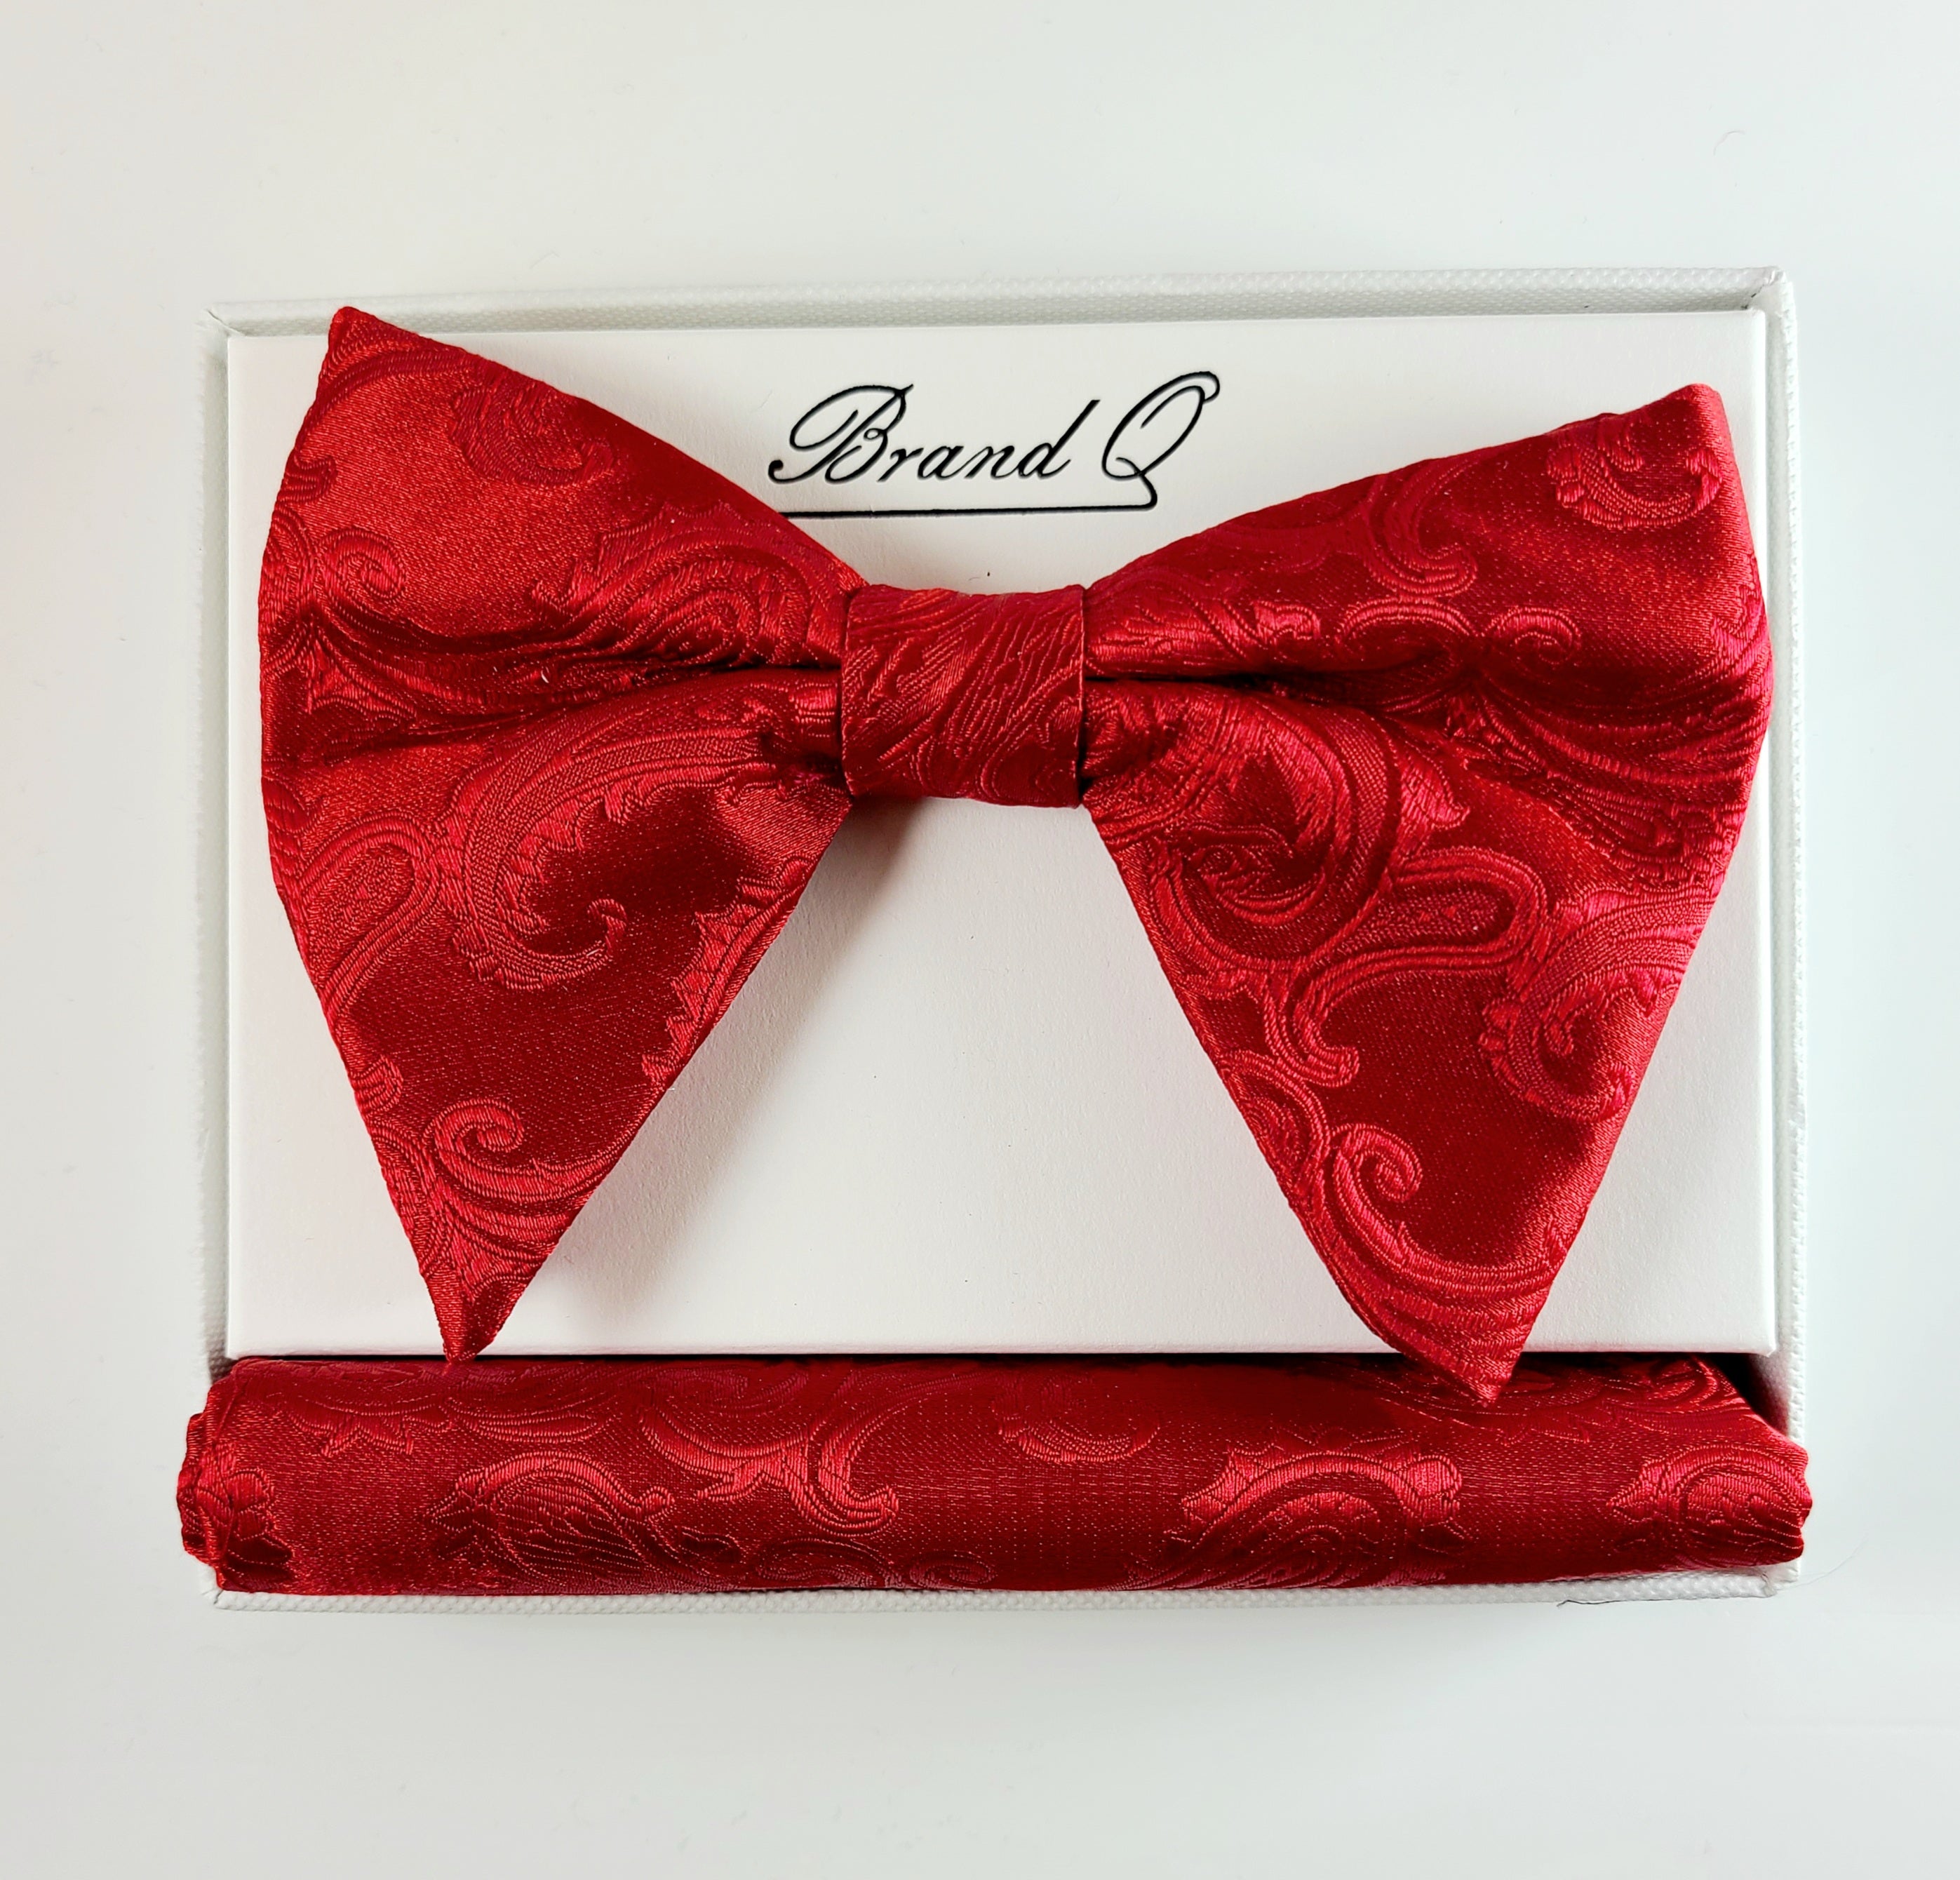 Brand Q Paisley Bow tie